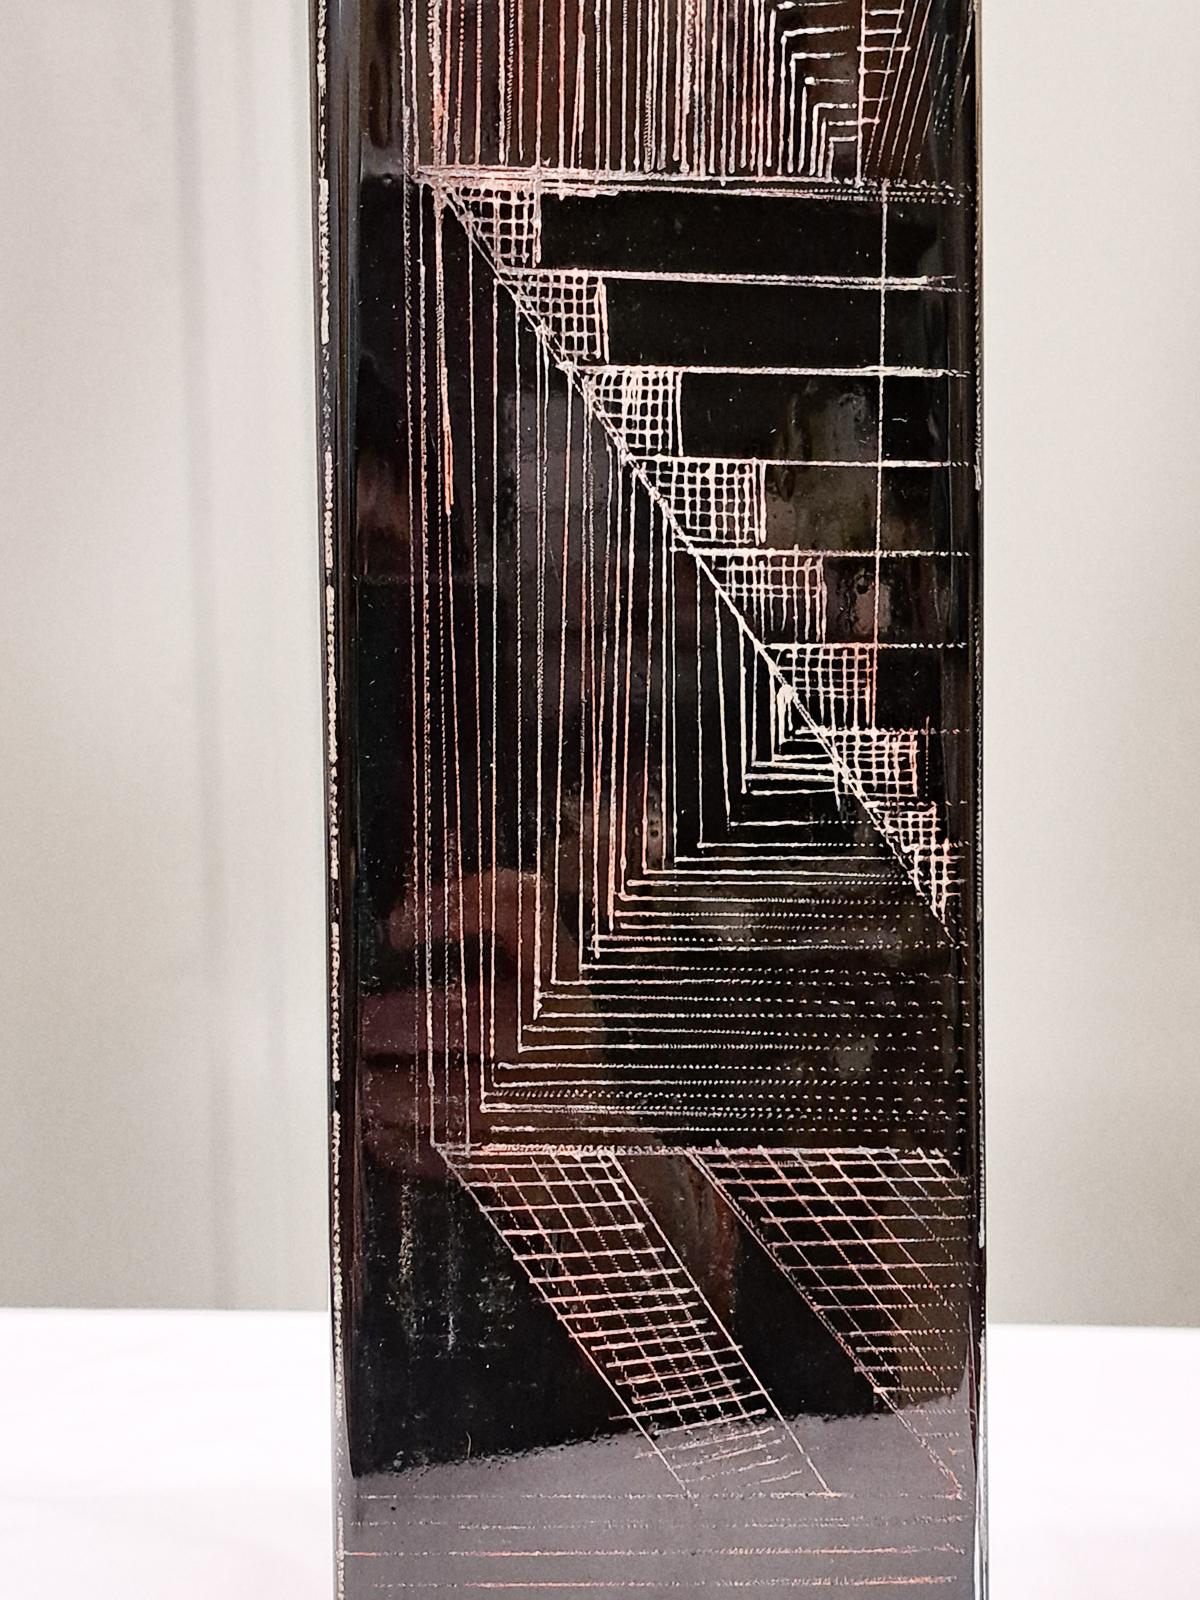 Anatole Riecke, vase noir, verre gravé, signé et daté,  20e siècle. Cette série dépeint l'ascension paysagère de l'État de New York. 

Une pièce d'art étonnante, tous uniques, des vases distinctifs, façonnés avec des motifs gravés du cubisme